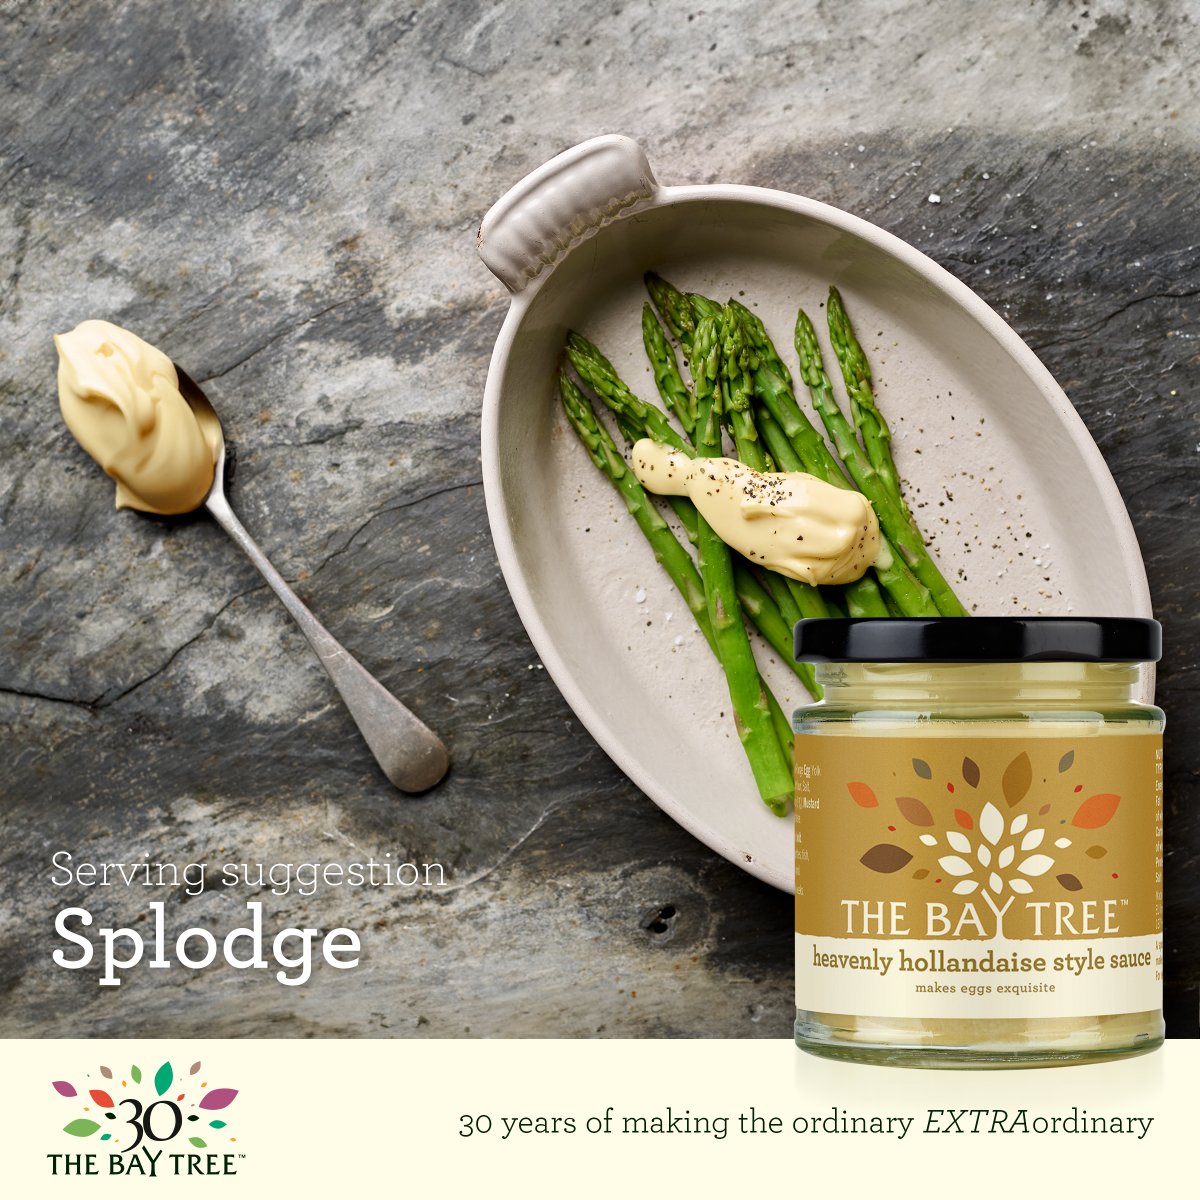 𝐁𝐑𝐈𝐍𝐆 𝐎𝐍 𝐓𝐇𝐄 𝐀𝐒𝐏𝐀𝐑𝐀𝐆𝐔𝐒. Or rather, splodge on the asparagus! 😋 thebaytree.co.uk/mayonnaise-sau… #hollandaise #asparagus